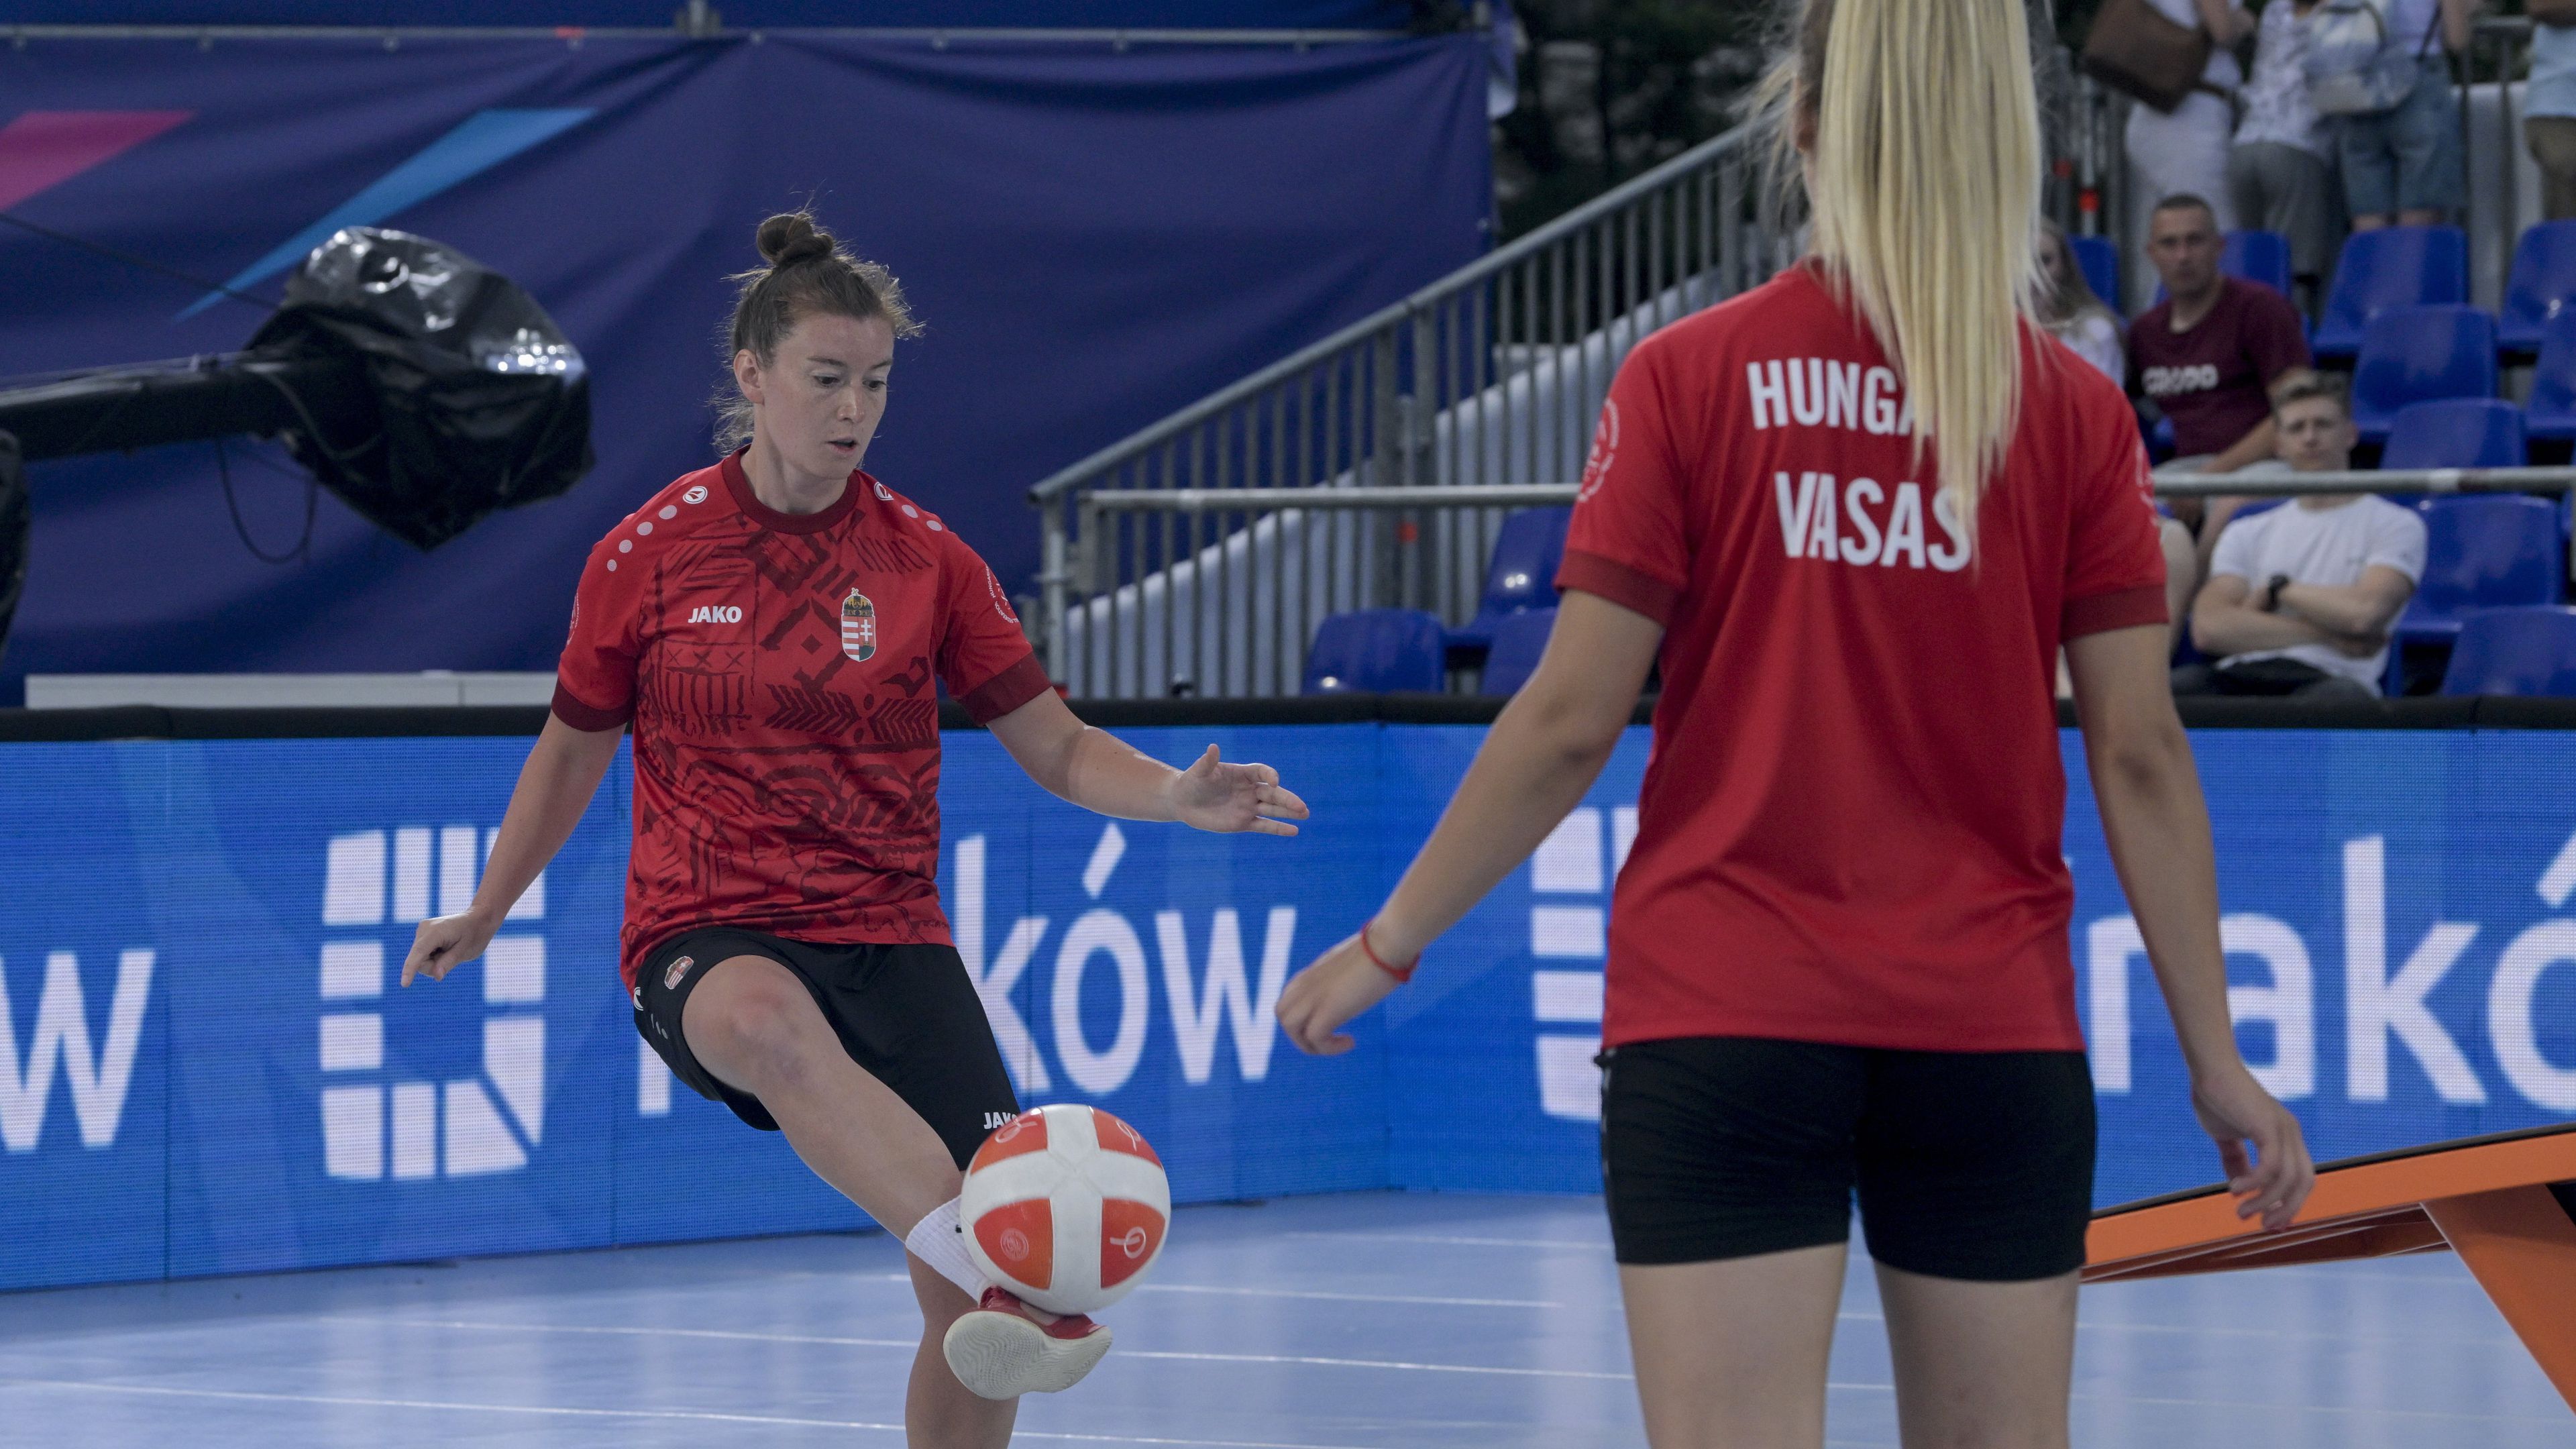 Második csoportmeccsét is megnyerte, negyeddöntős a magyar női páros teqballban